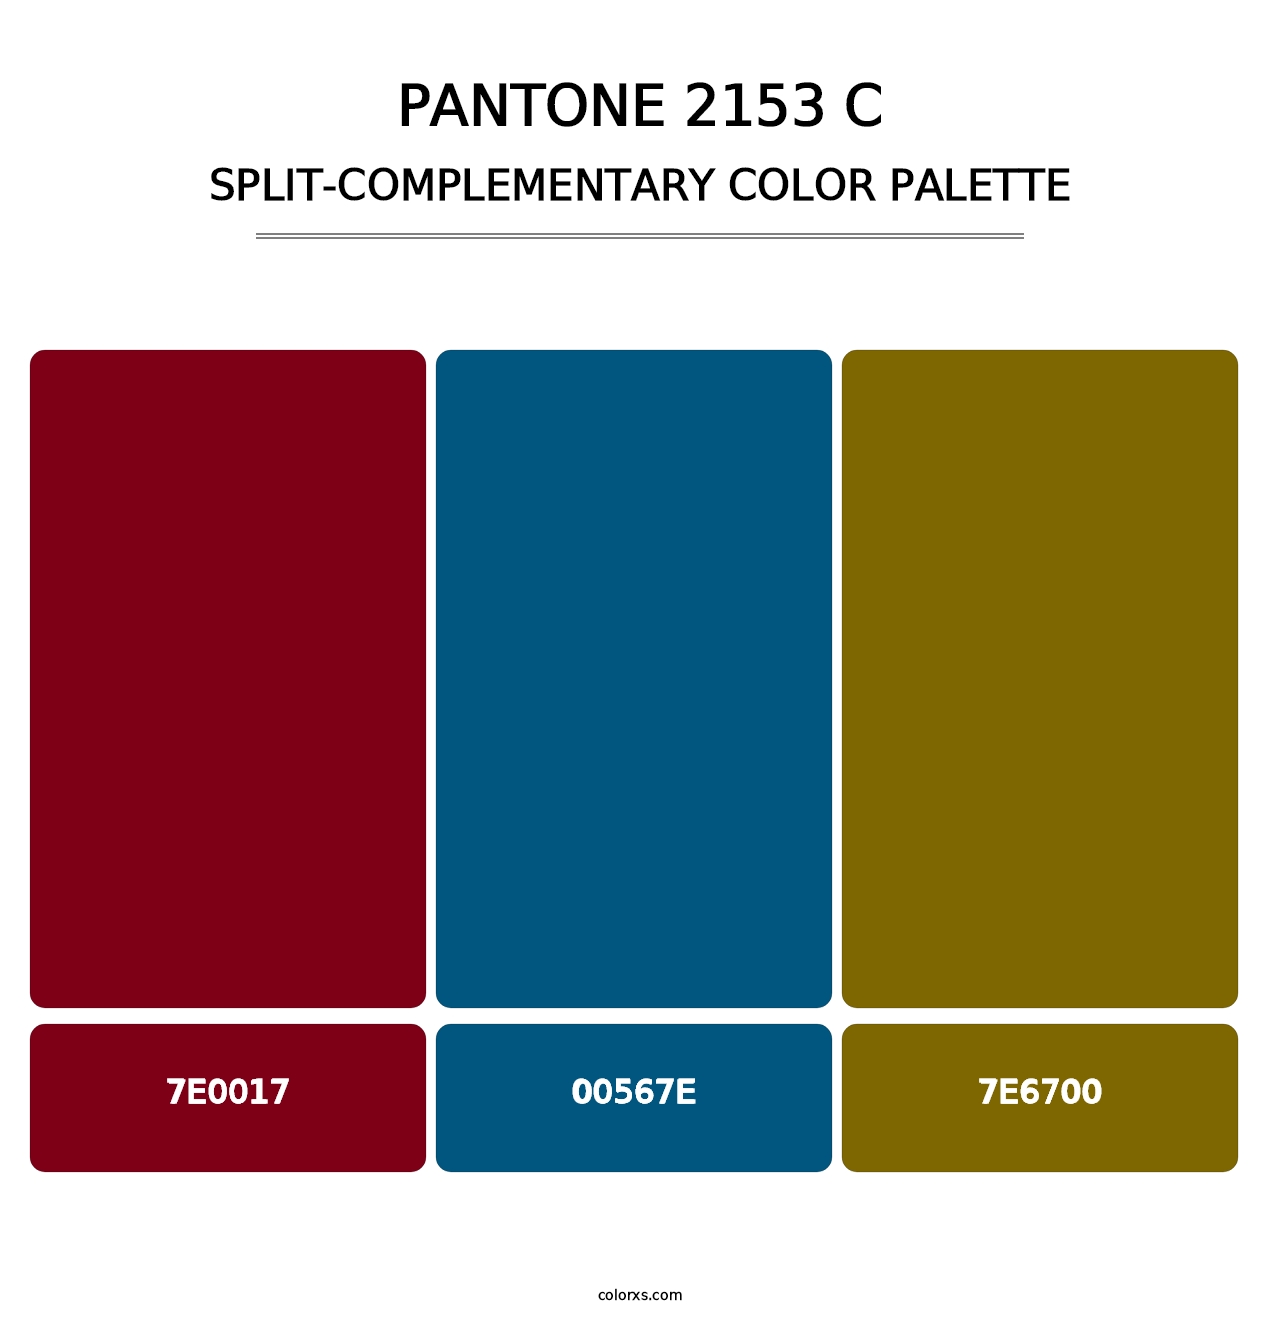 PANTONE 2153 C - Split-Complementary Color Palette